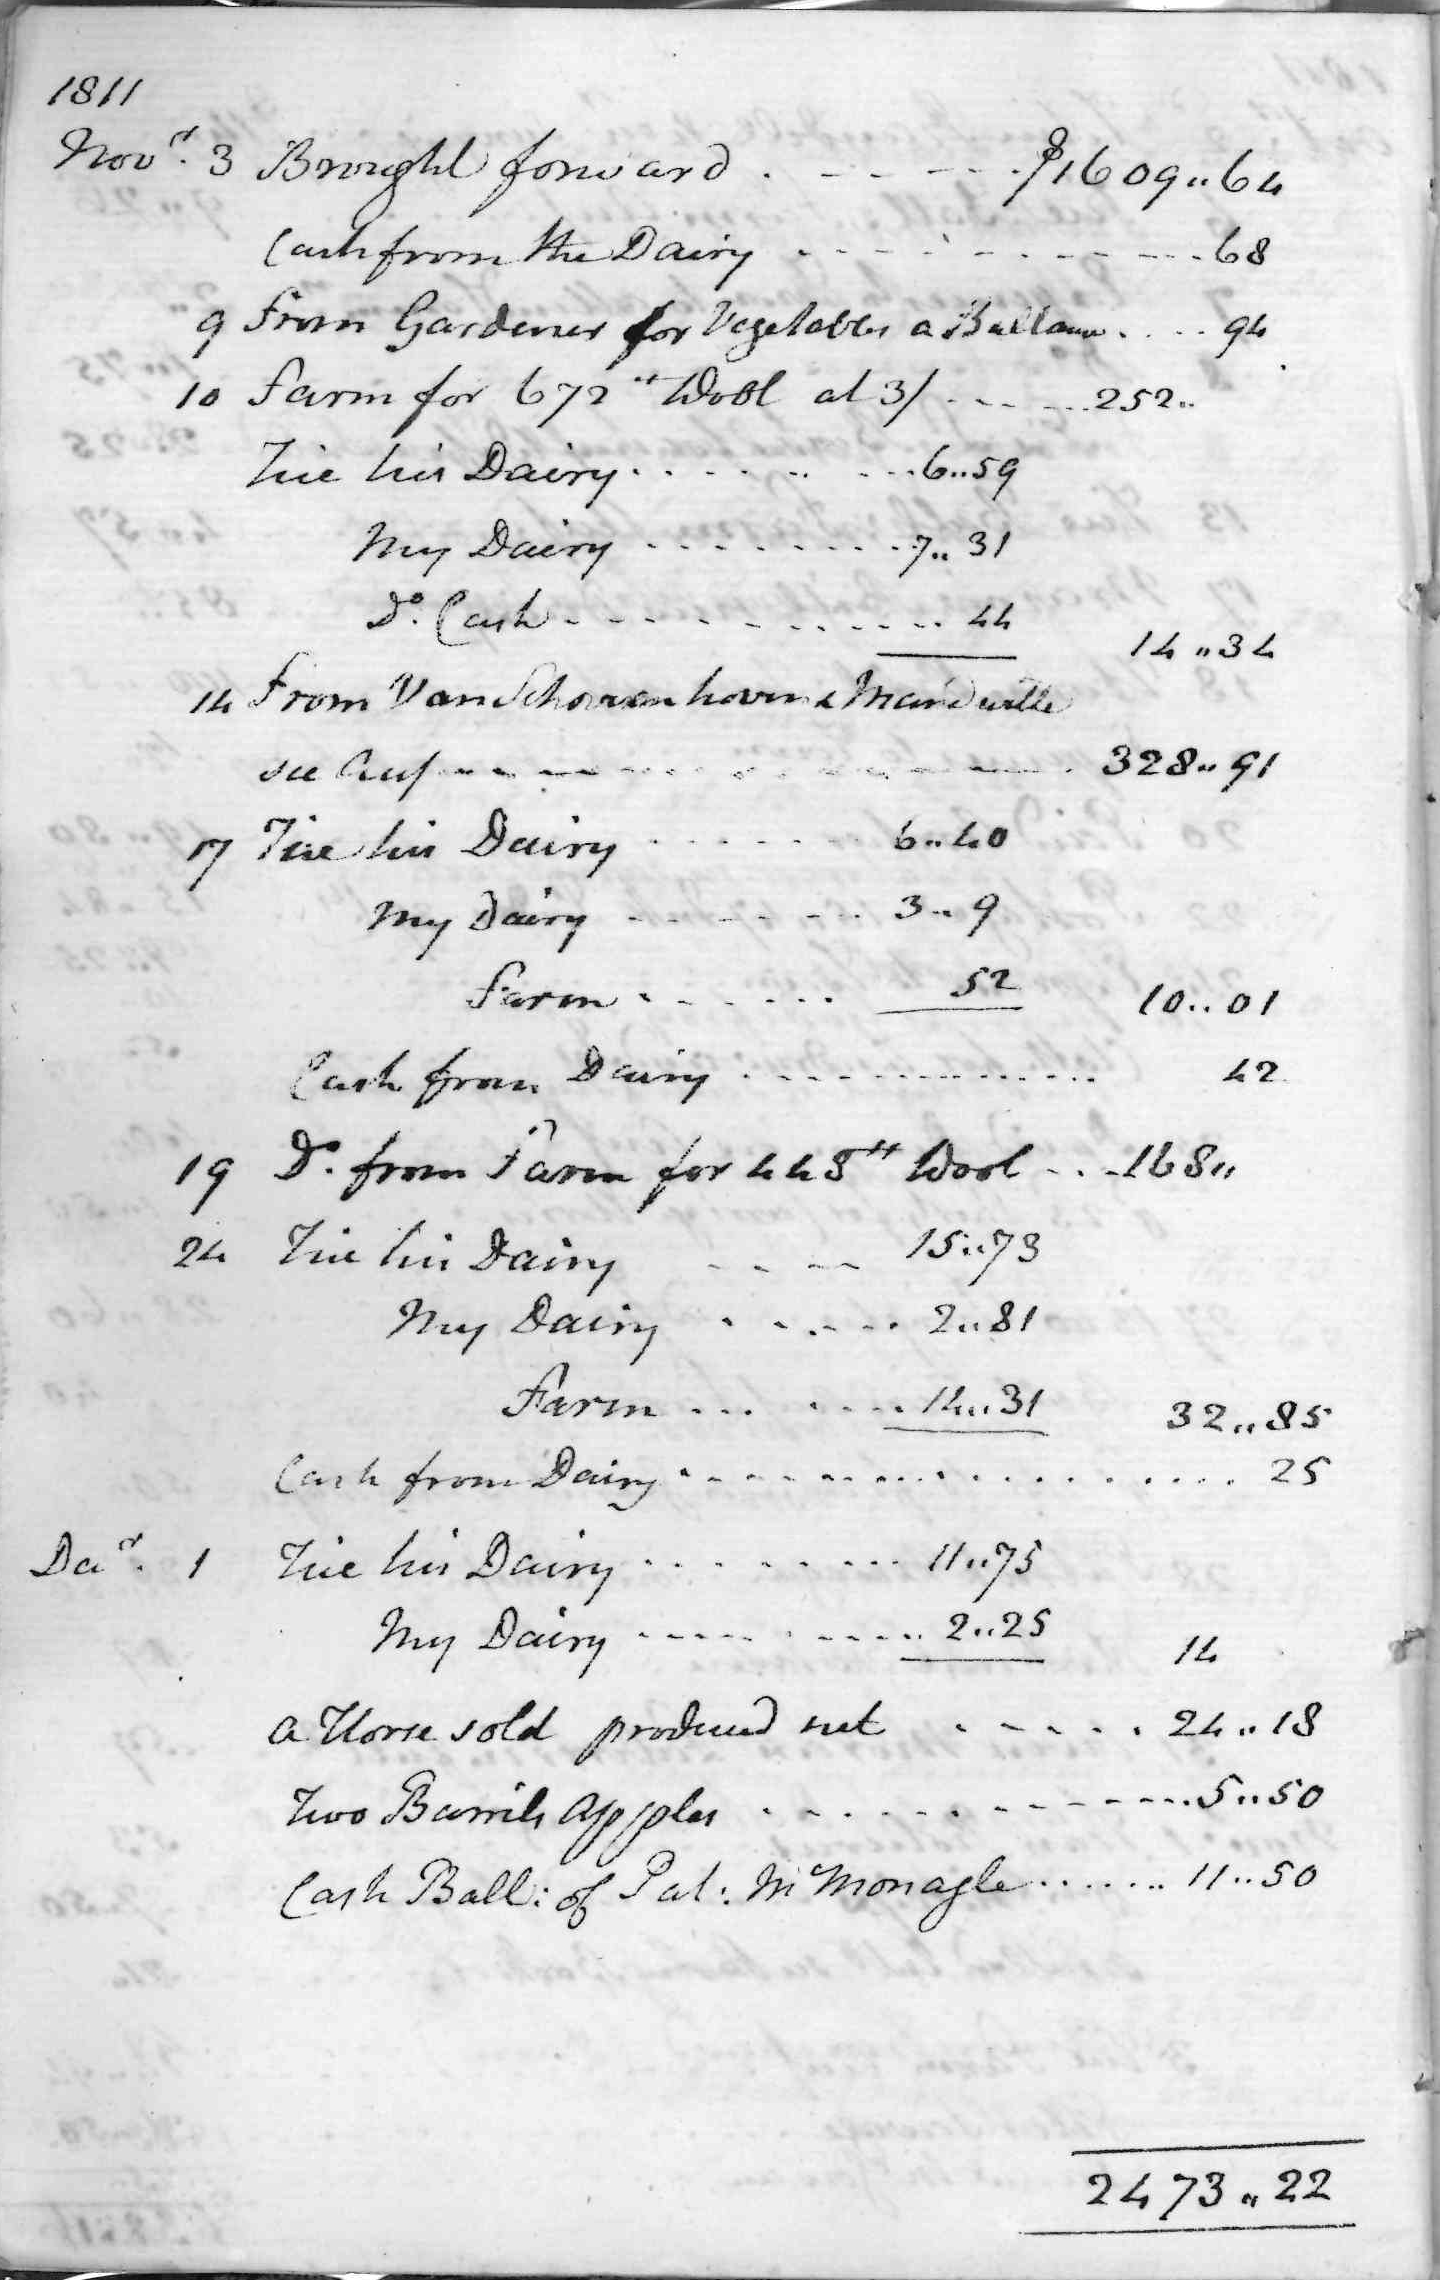 Gouverneur Morris Cash Book, folio 3, left side